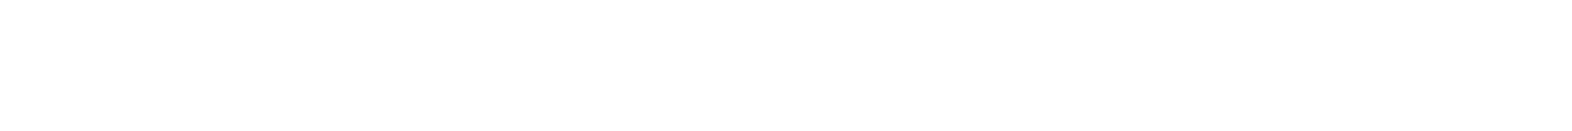 BorgWarner logo large for dark backgrounds (transparent PNG)